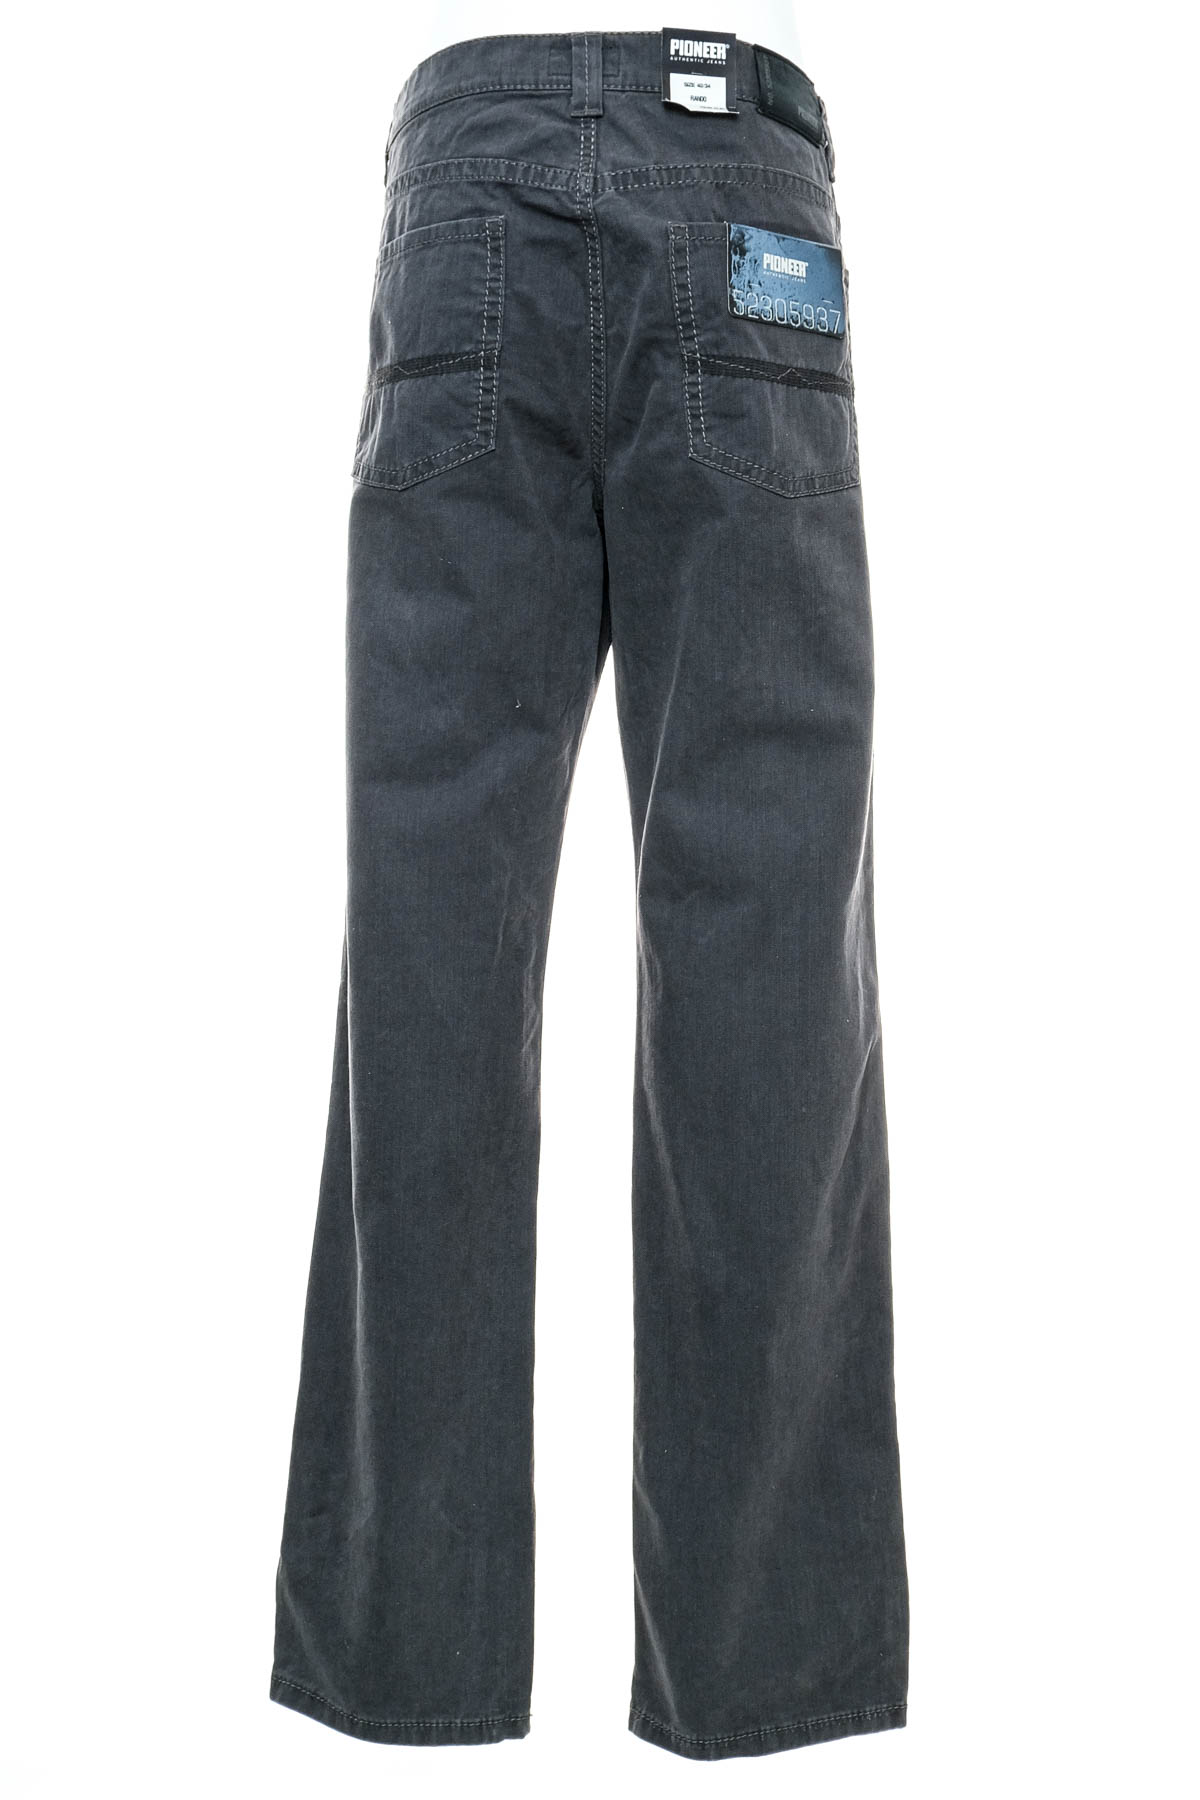 Jeans pentru bărbăți - Pioneer - 1